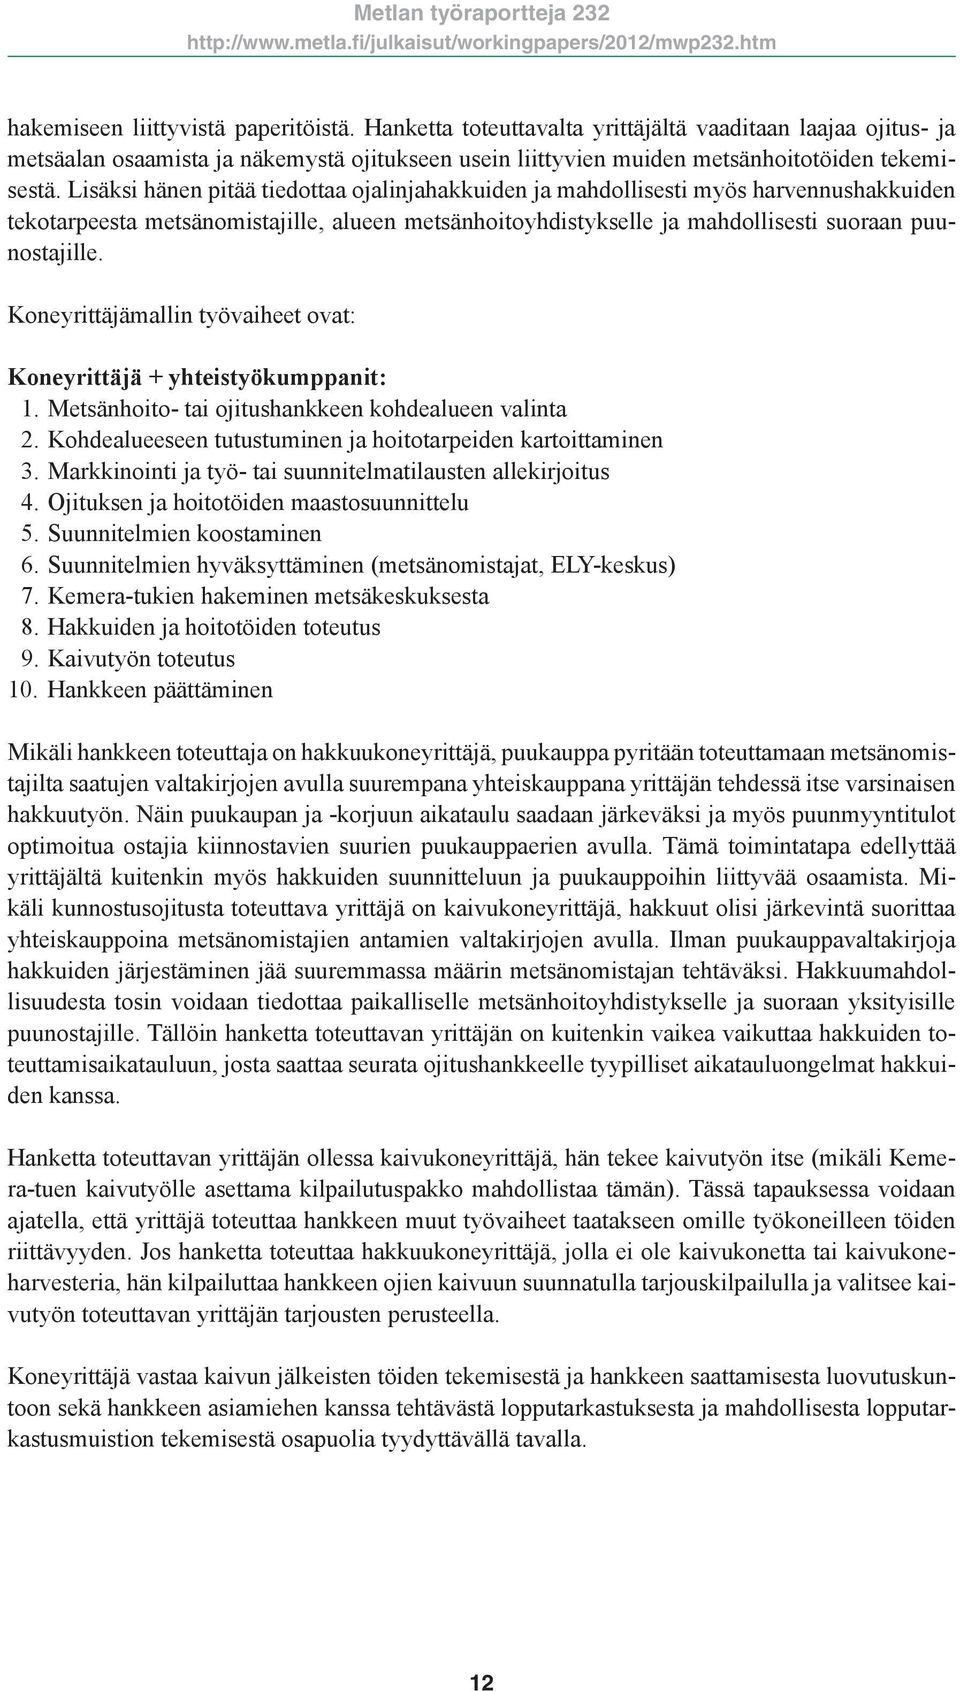 Koneyrittäjämallin työvaiheet ovat: Koneyrittäjä + yhteistyökumppanit: 1. Metsänhoito- tai ojitushankkeen kohdealueen valinta 2. Kohdealueeseen tutustuminen ja hoitotarpeiden kartoittaminen 3.